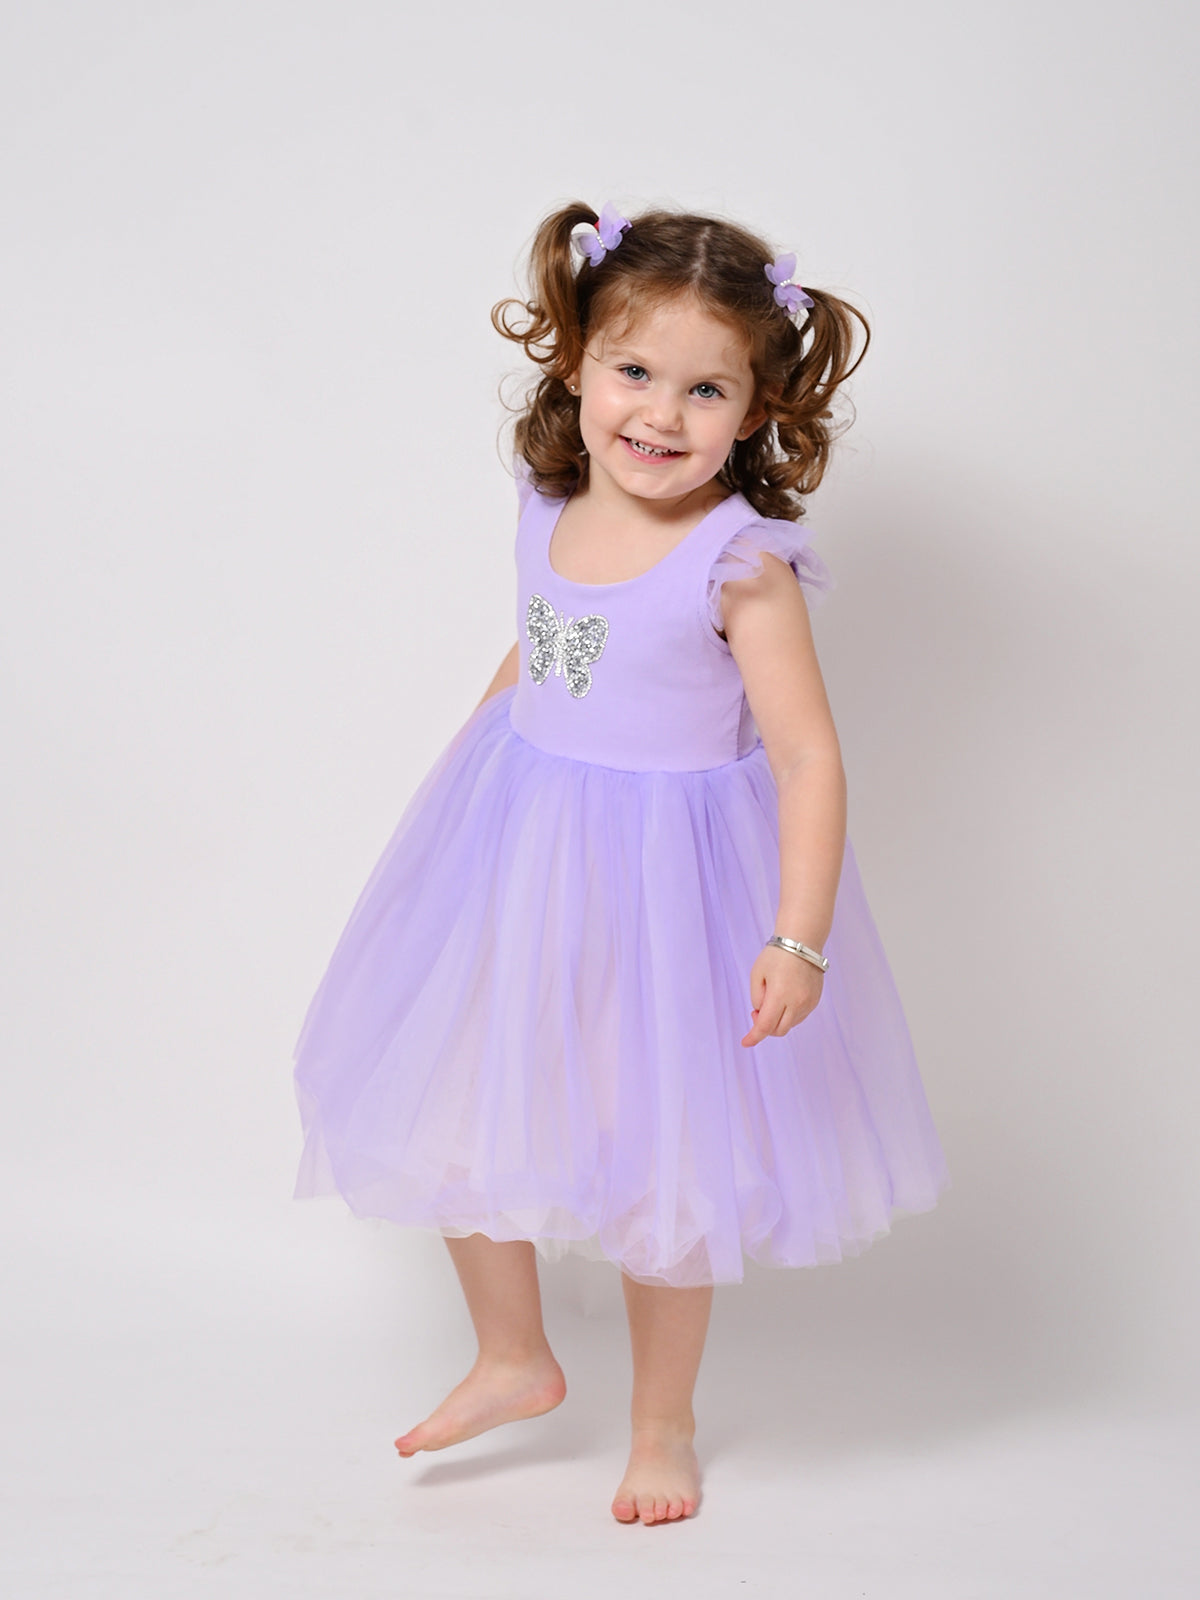 שמלת טול פרפר סגולה / ילדות ותינוקות- Almonet|עלמונת